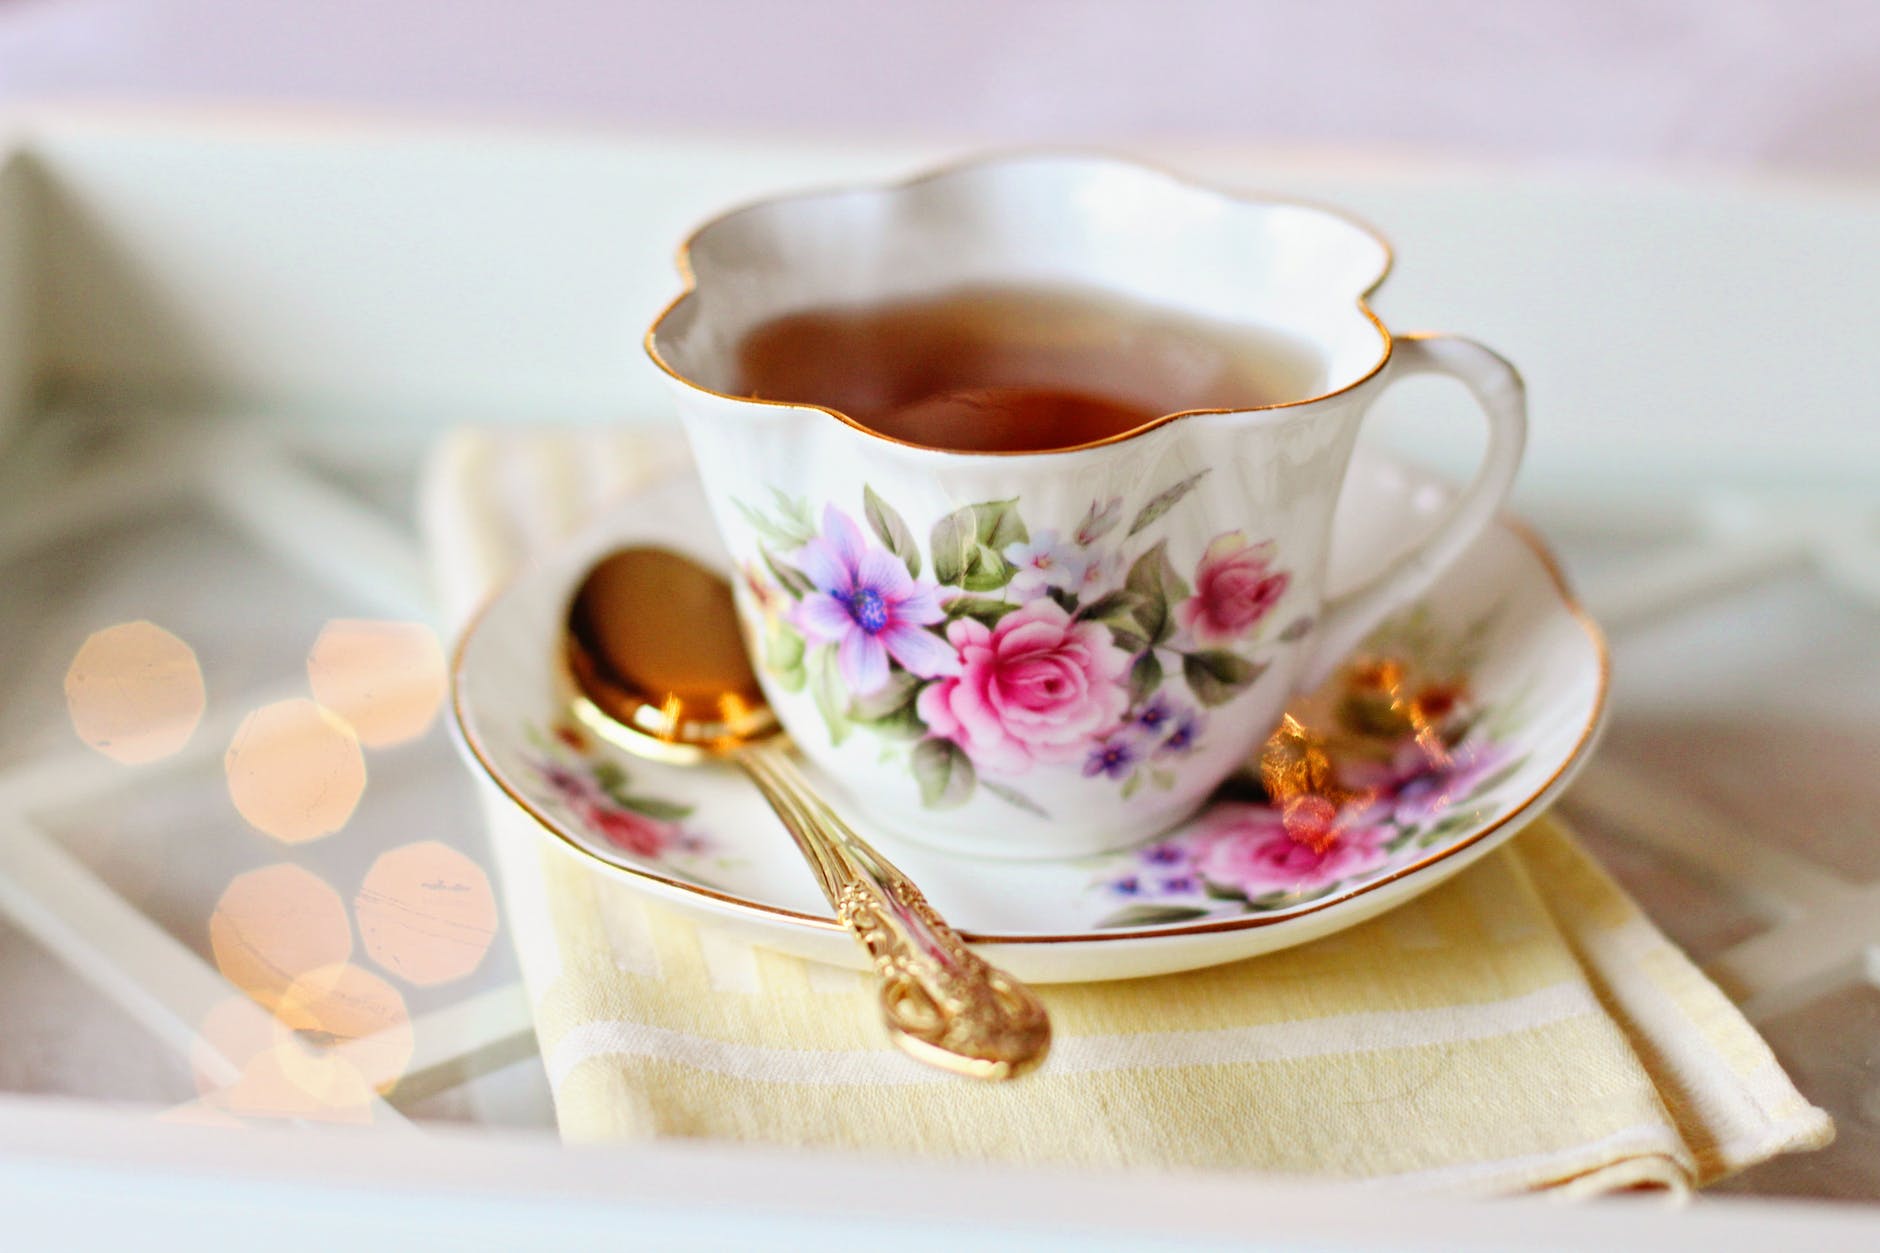 Nếu “cuppa” đứng một mình thì có nghĩa là một tách trà